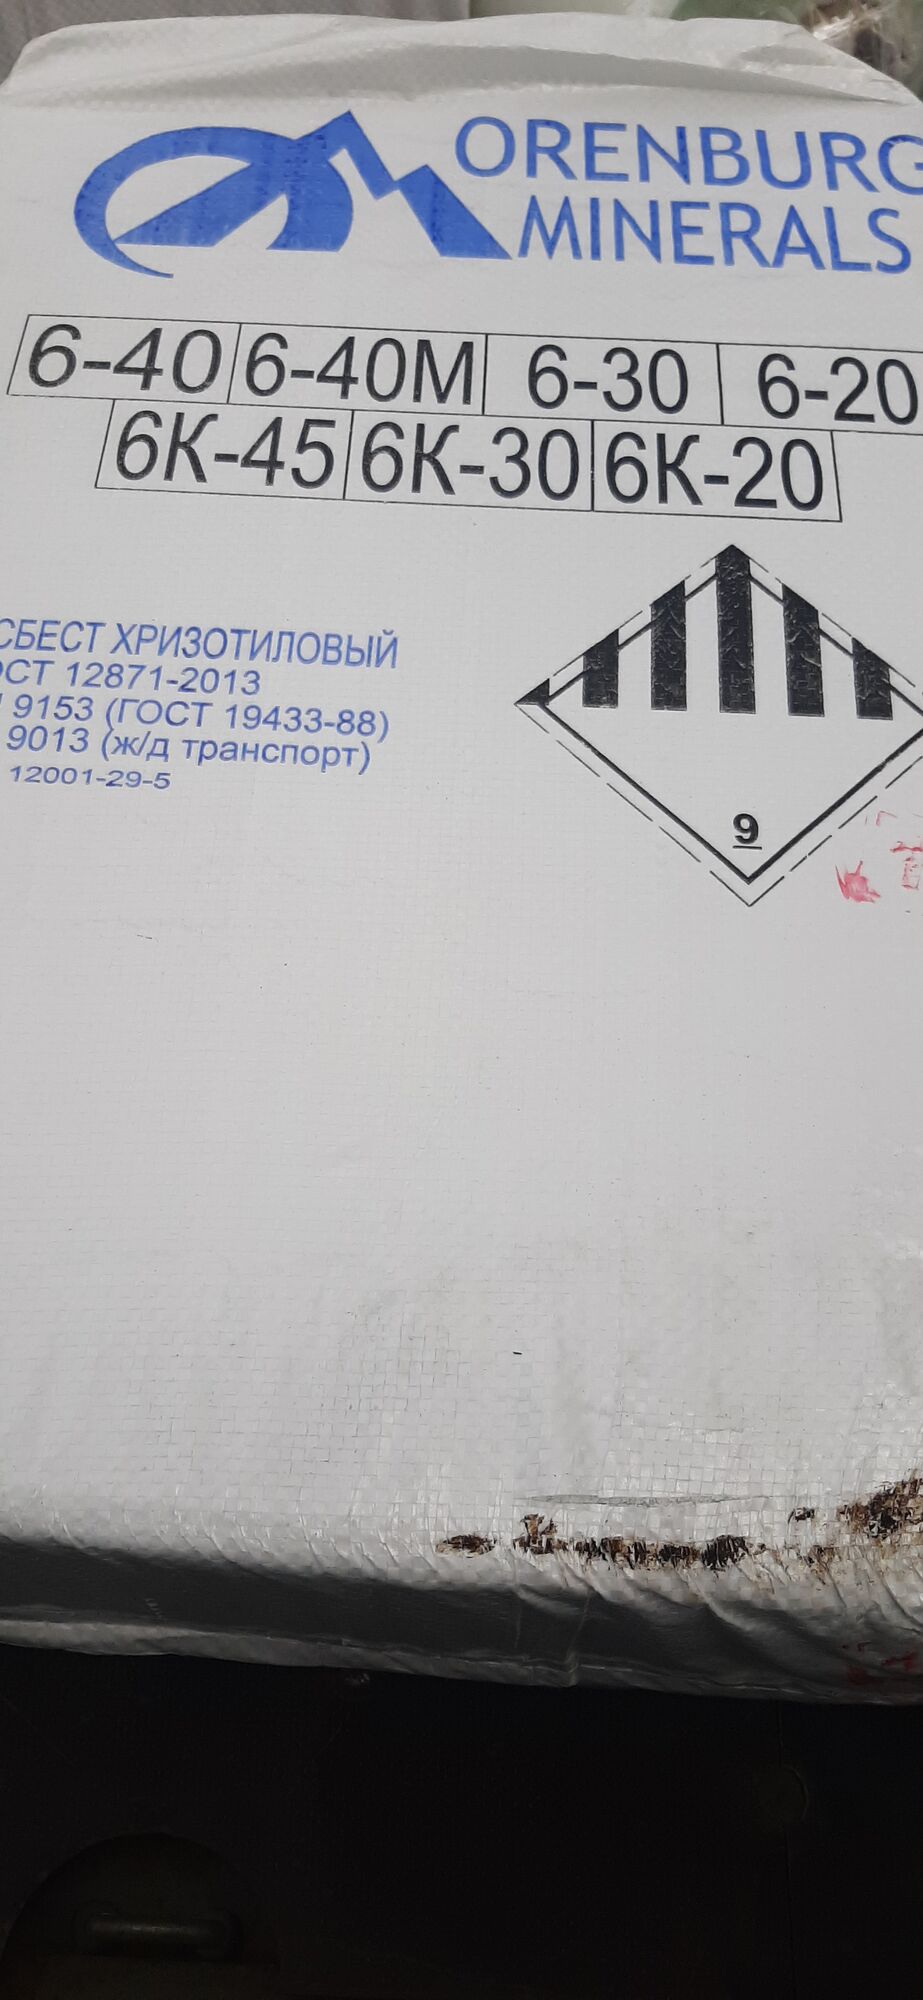 Асбест хризотиловый 6К-30 ГОСТ 12871-2013 (50 кг)